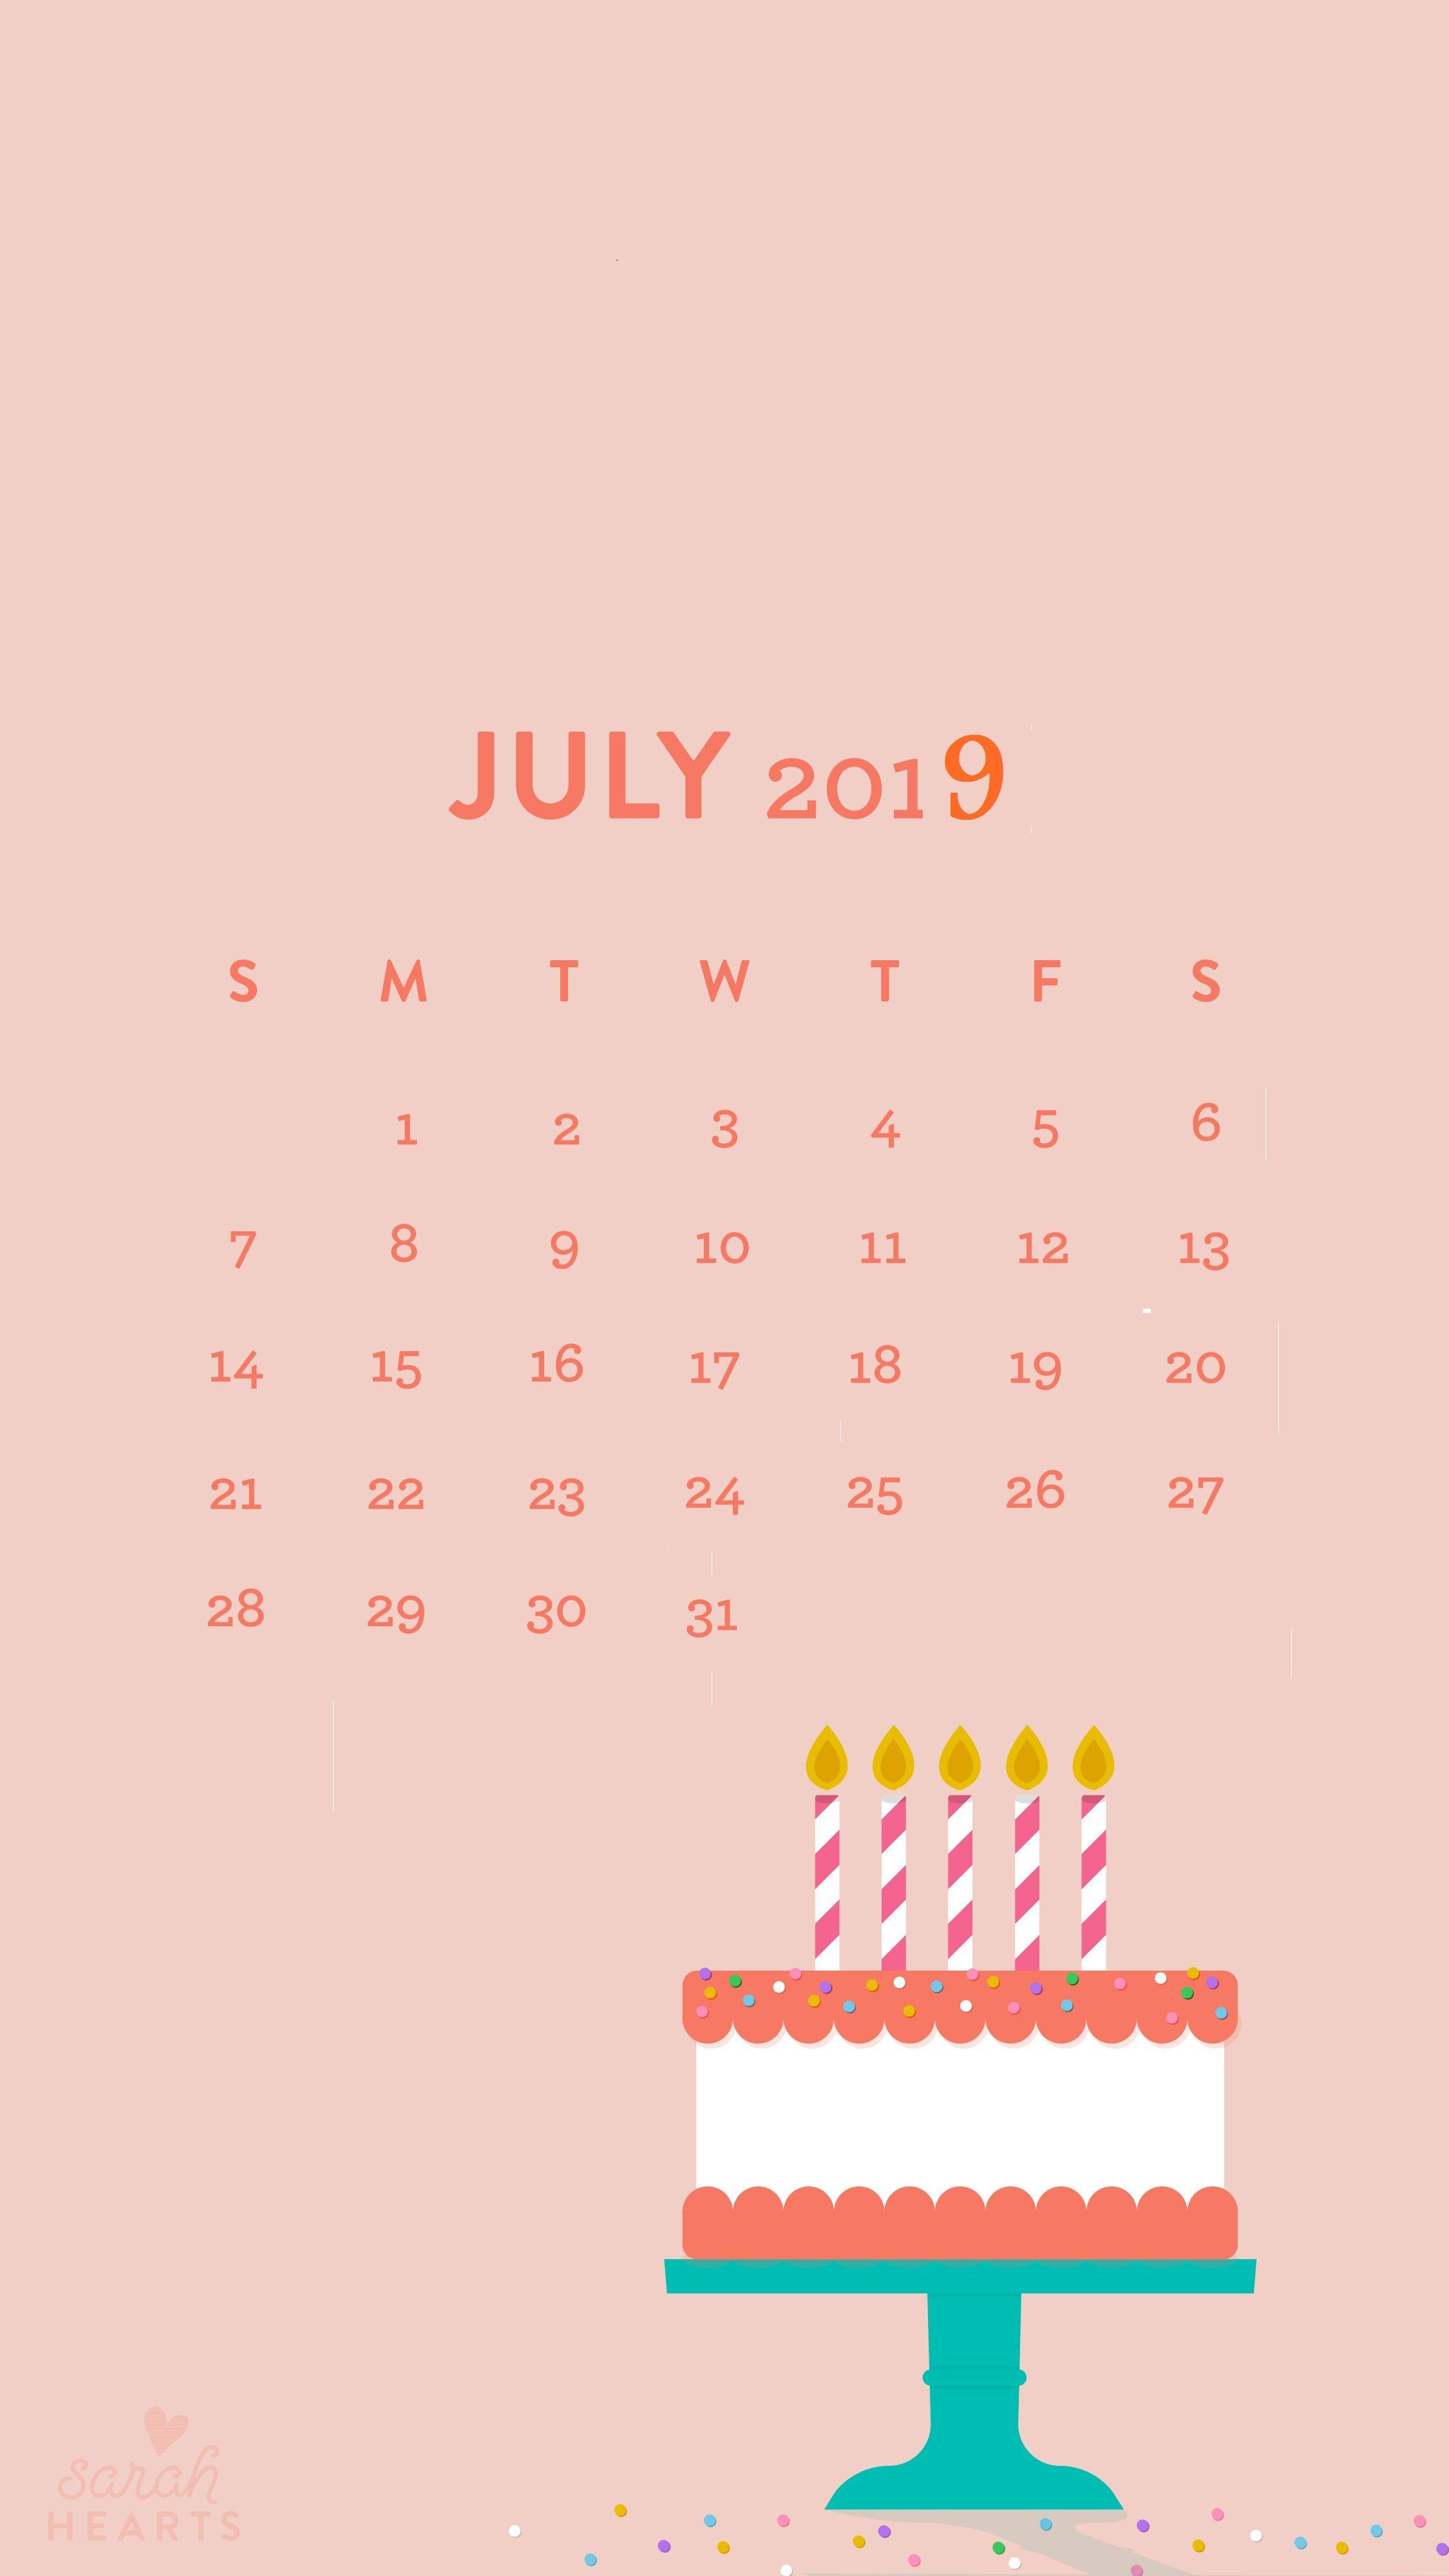 July 2019 iPhone Calendar Wallpaper. Homemaking. Calendar